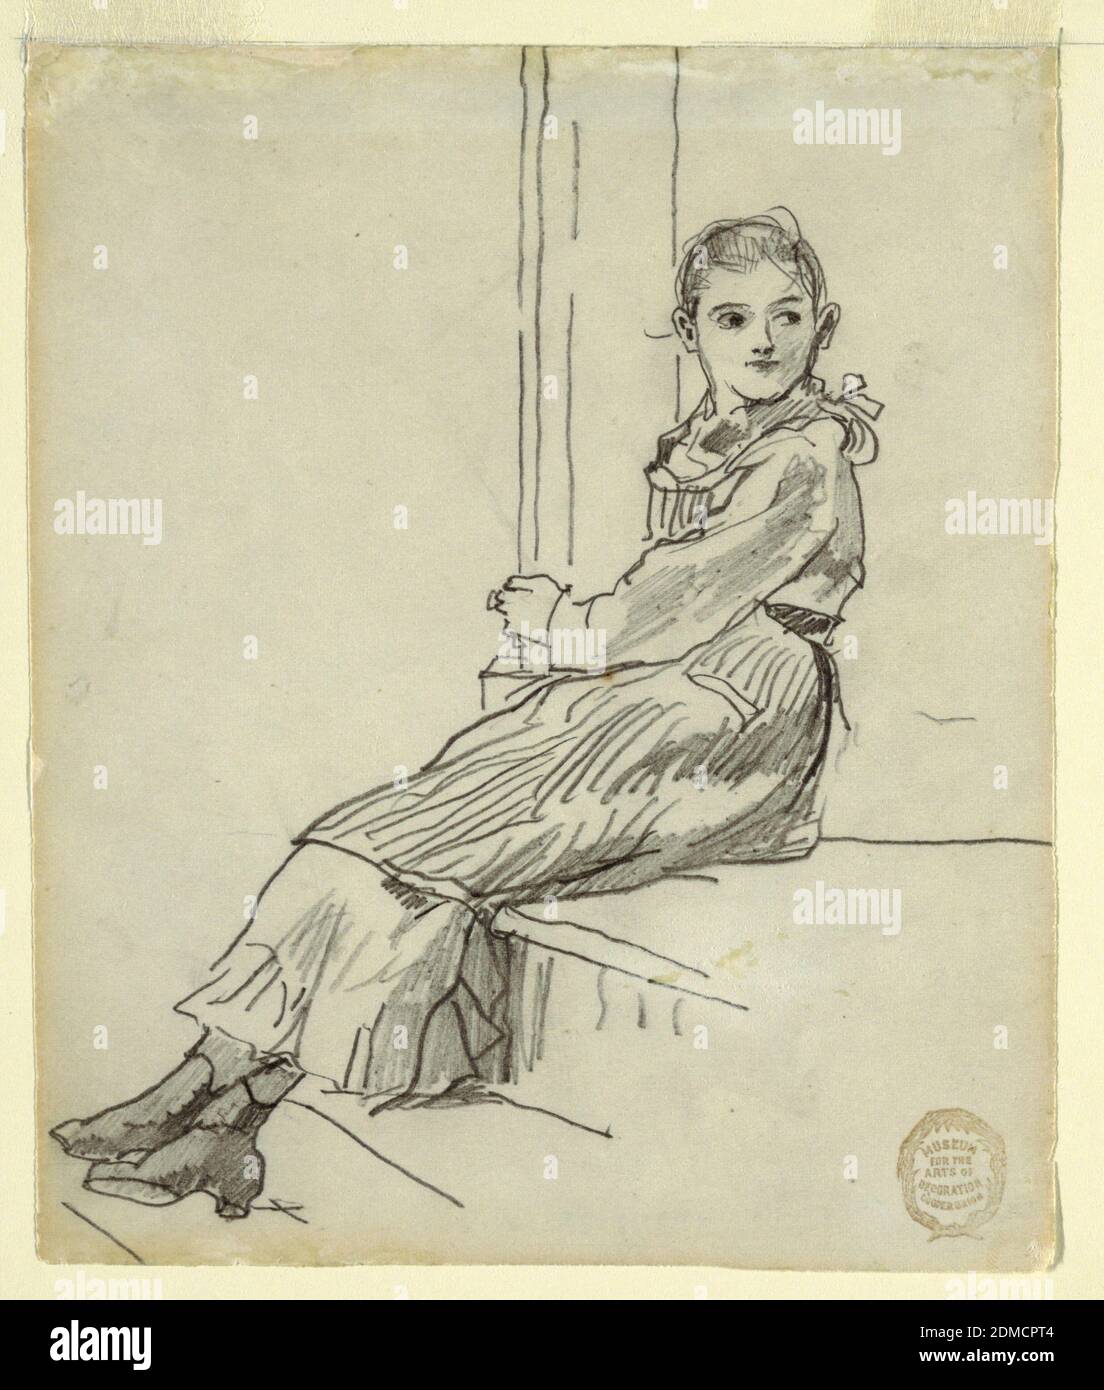 Girl Seated on a Porch Step, Winslow Homer, American, 1836–1910, Graphite auf Papier, Vertikale Ansicht eines Mädchens, das auf einer Porch-Stufe sitzt und mit den Armen eine Säule hält, während sich der Kopf nach links dreht., USA, 1879, Figuren, Zeichnung Stockfoto